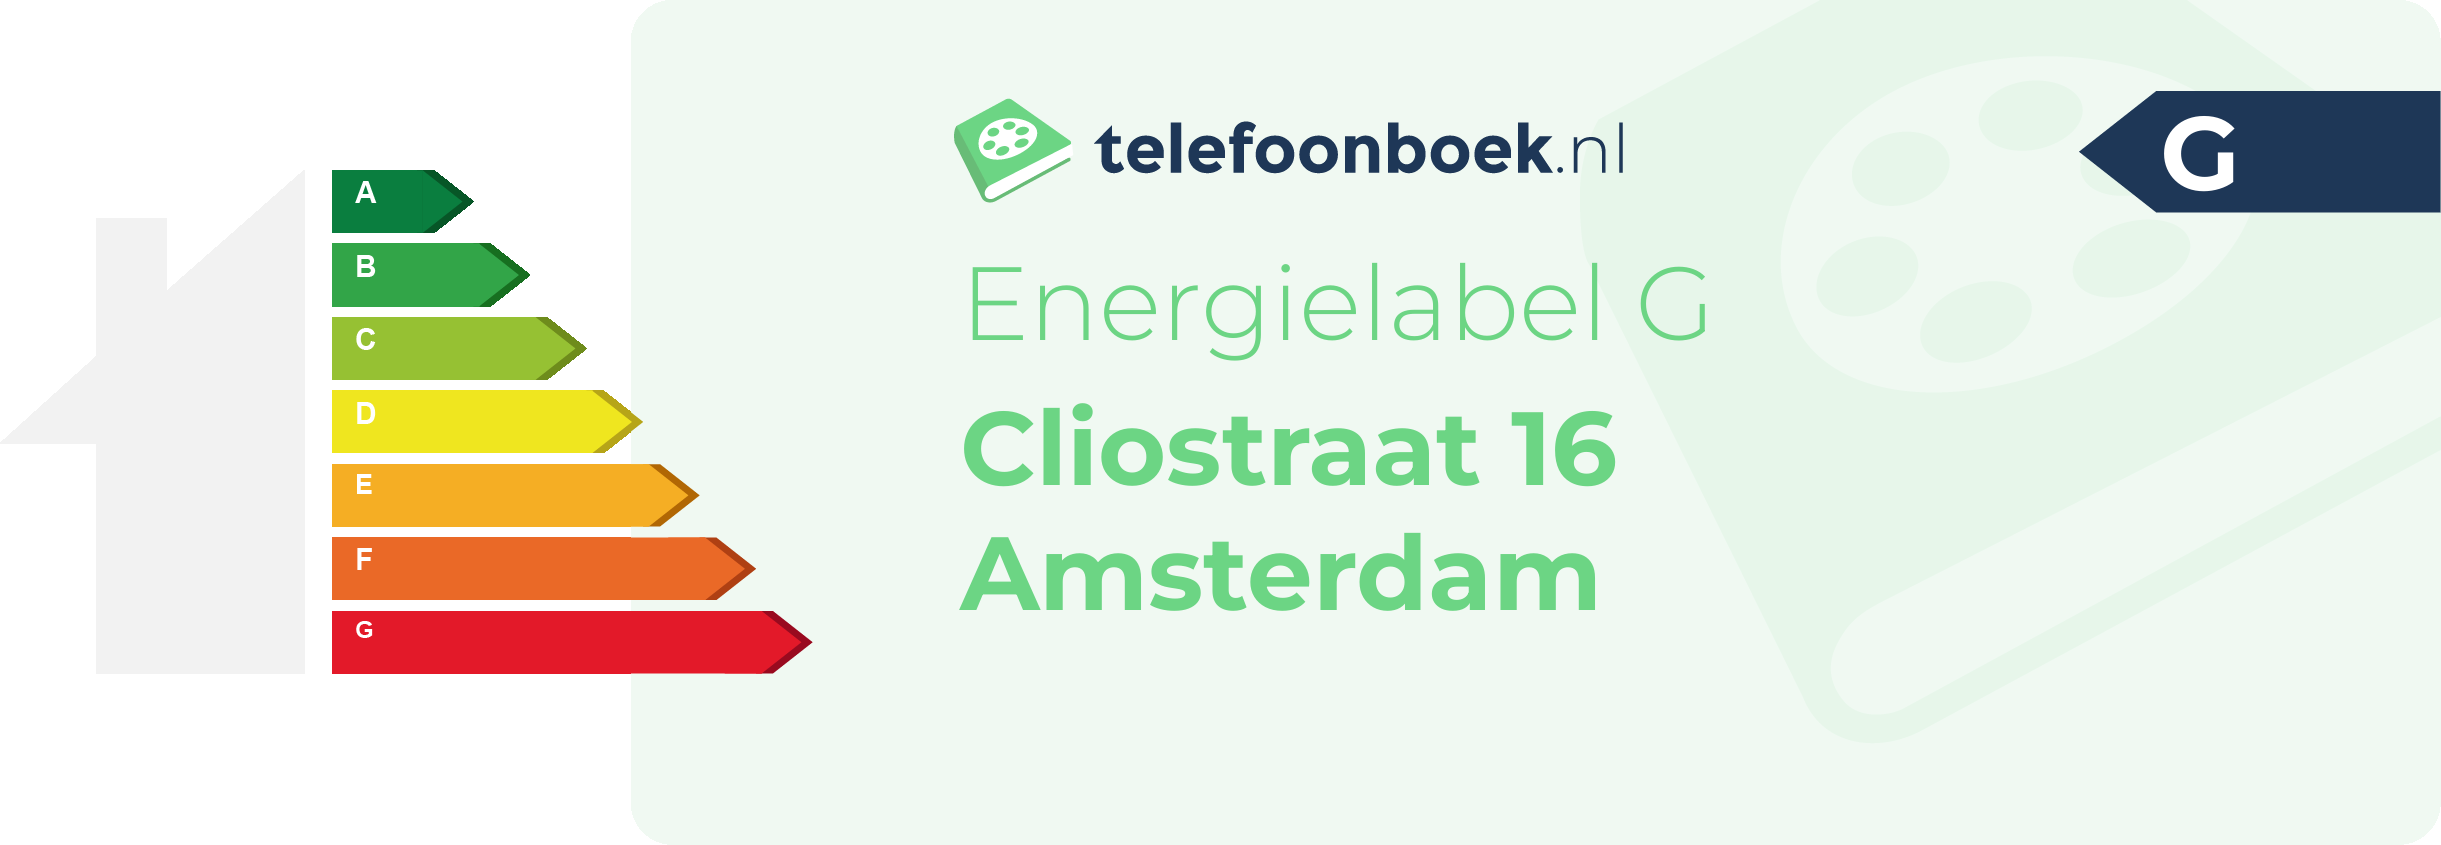 Energielabel Cliostraat 16 Amsterdam